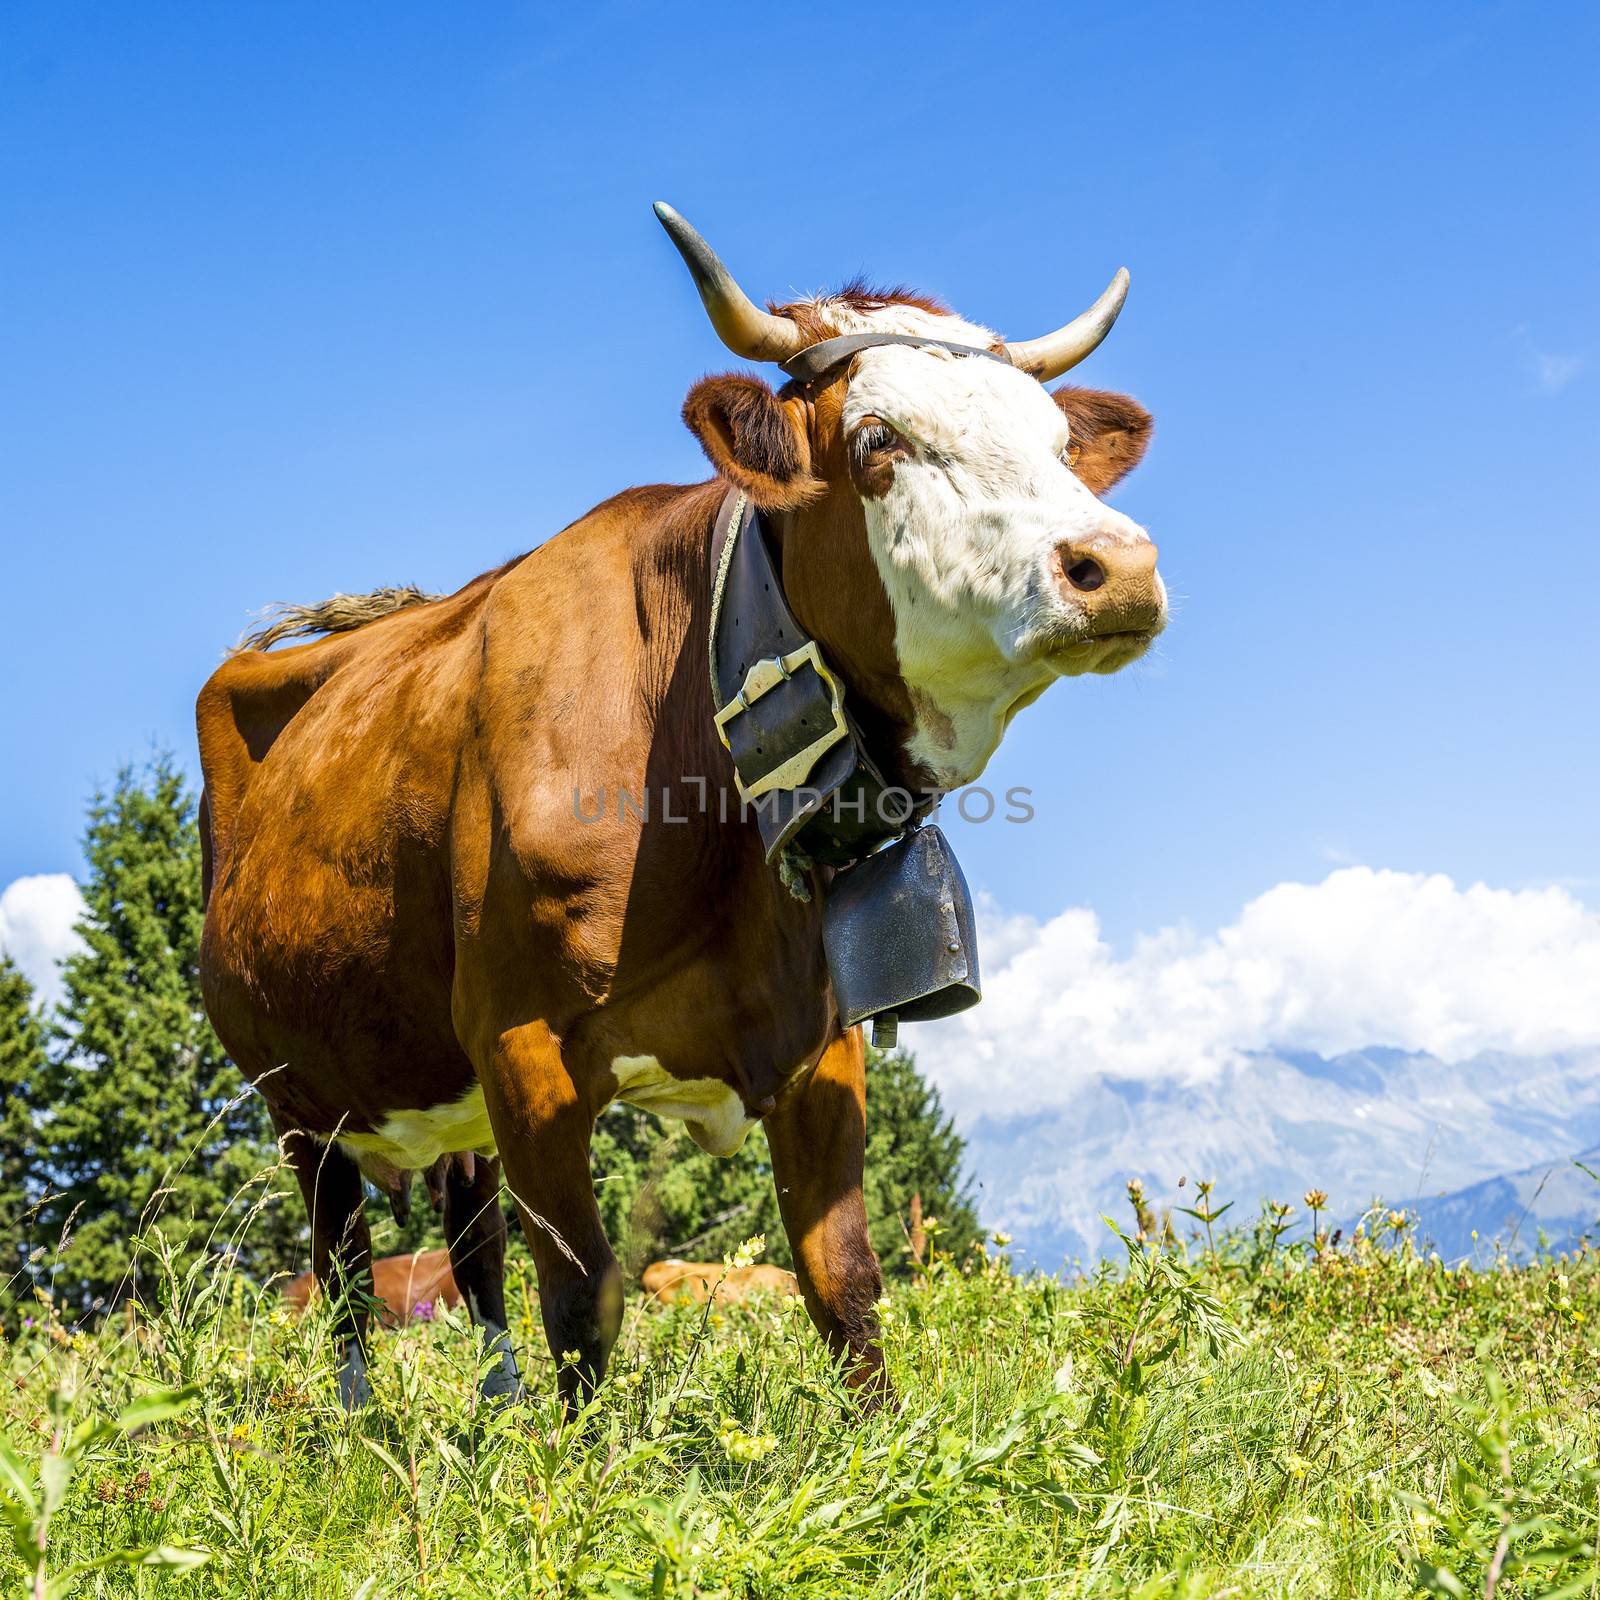 Alpine cows by ventdusud